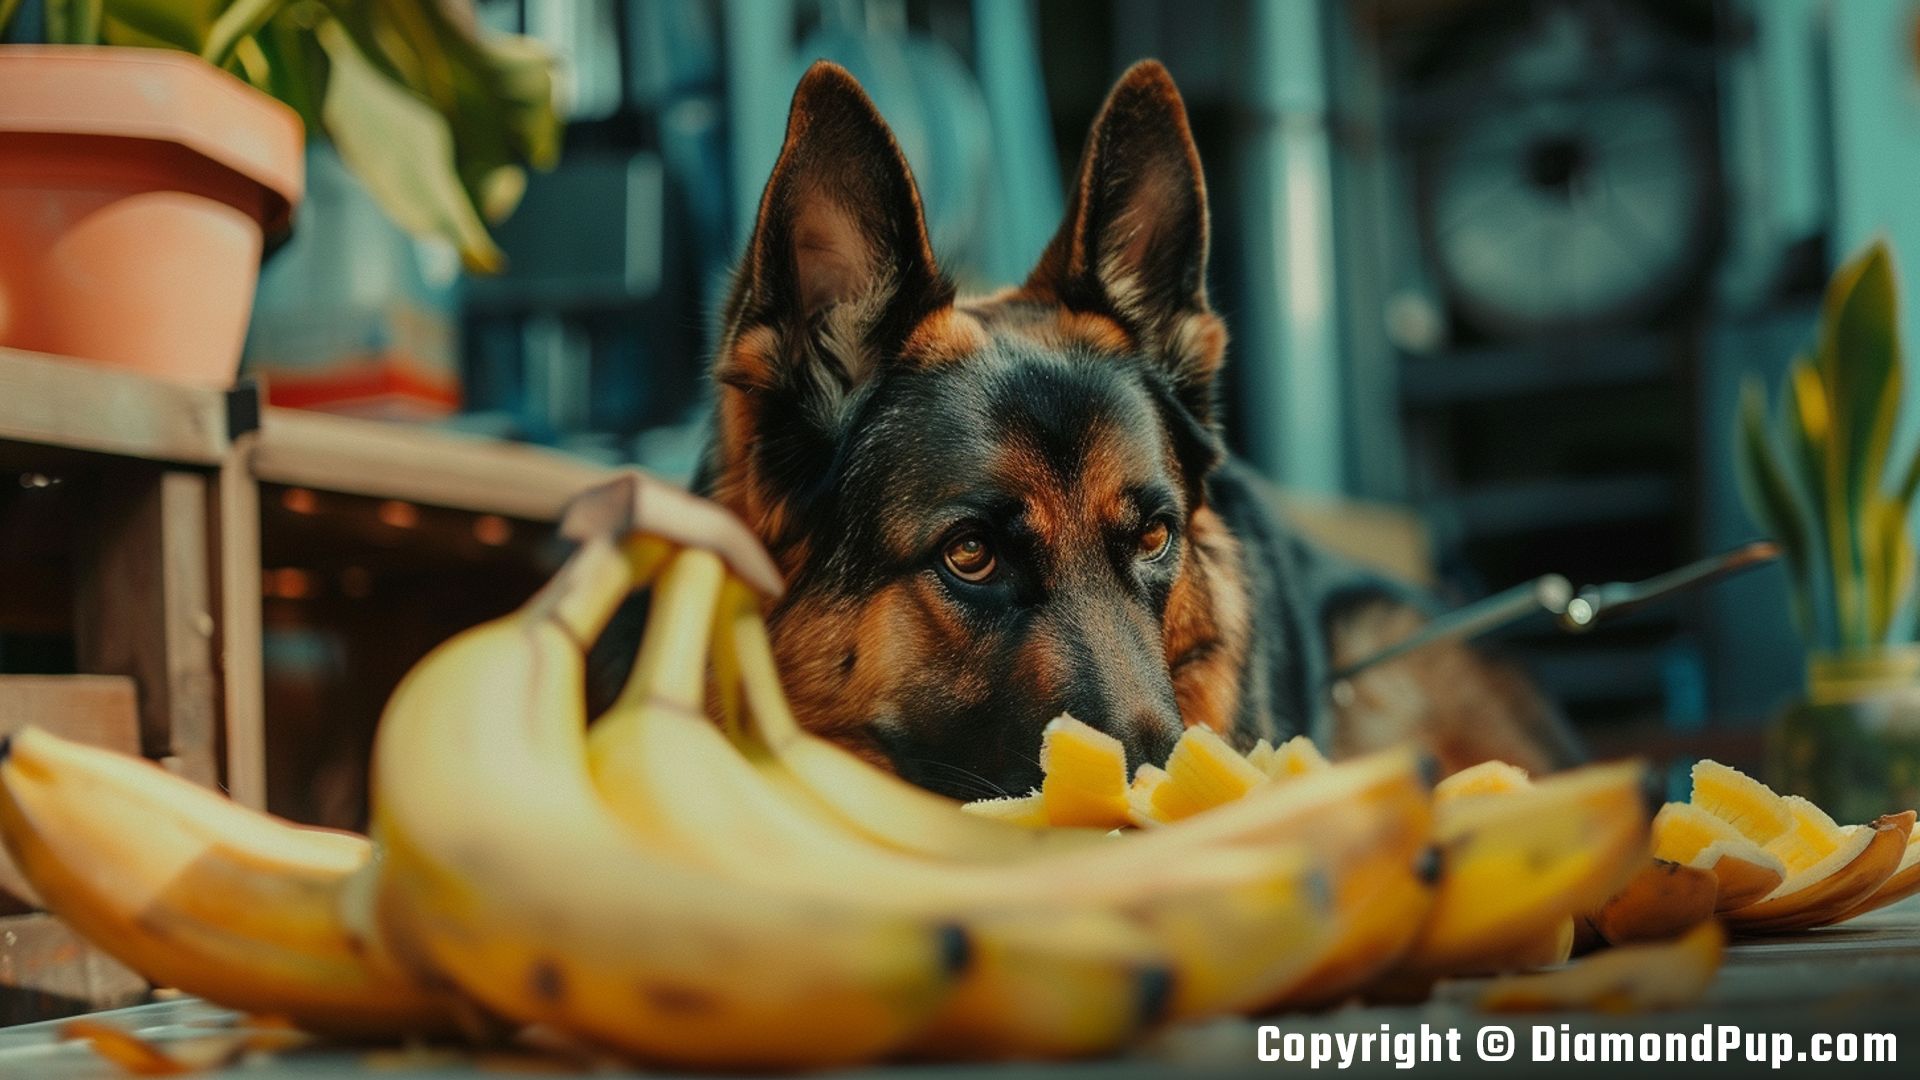 Photo of an Adorable German Shepherd Snacking on Banana